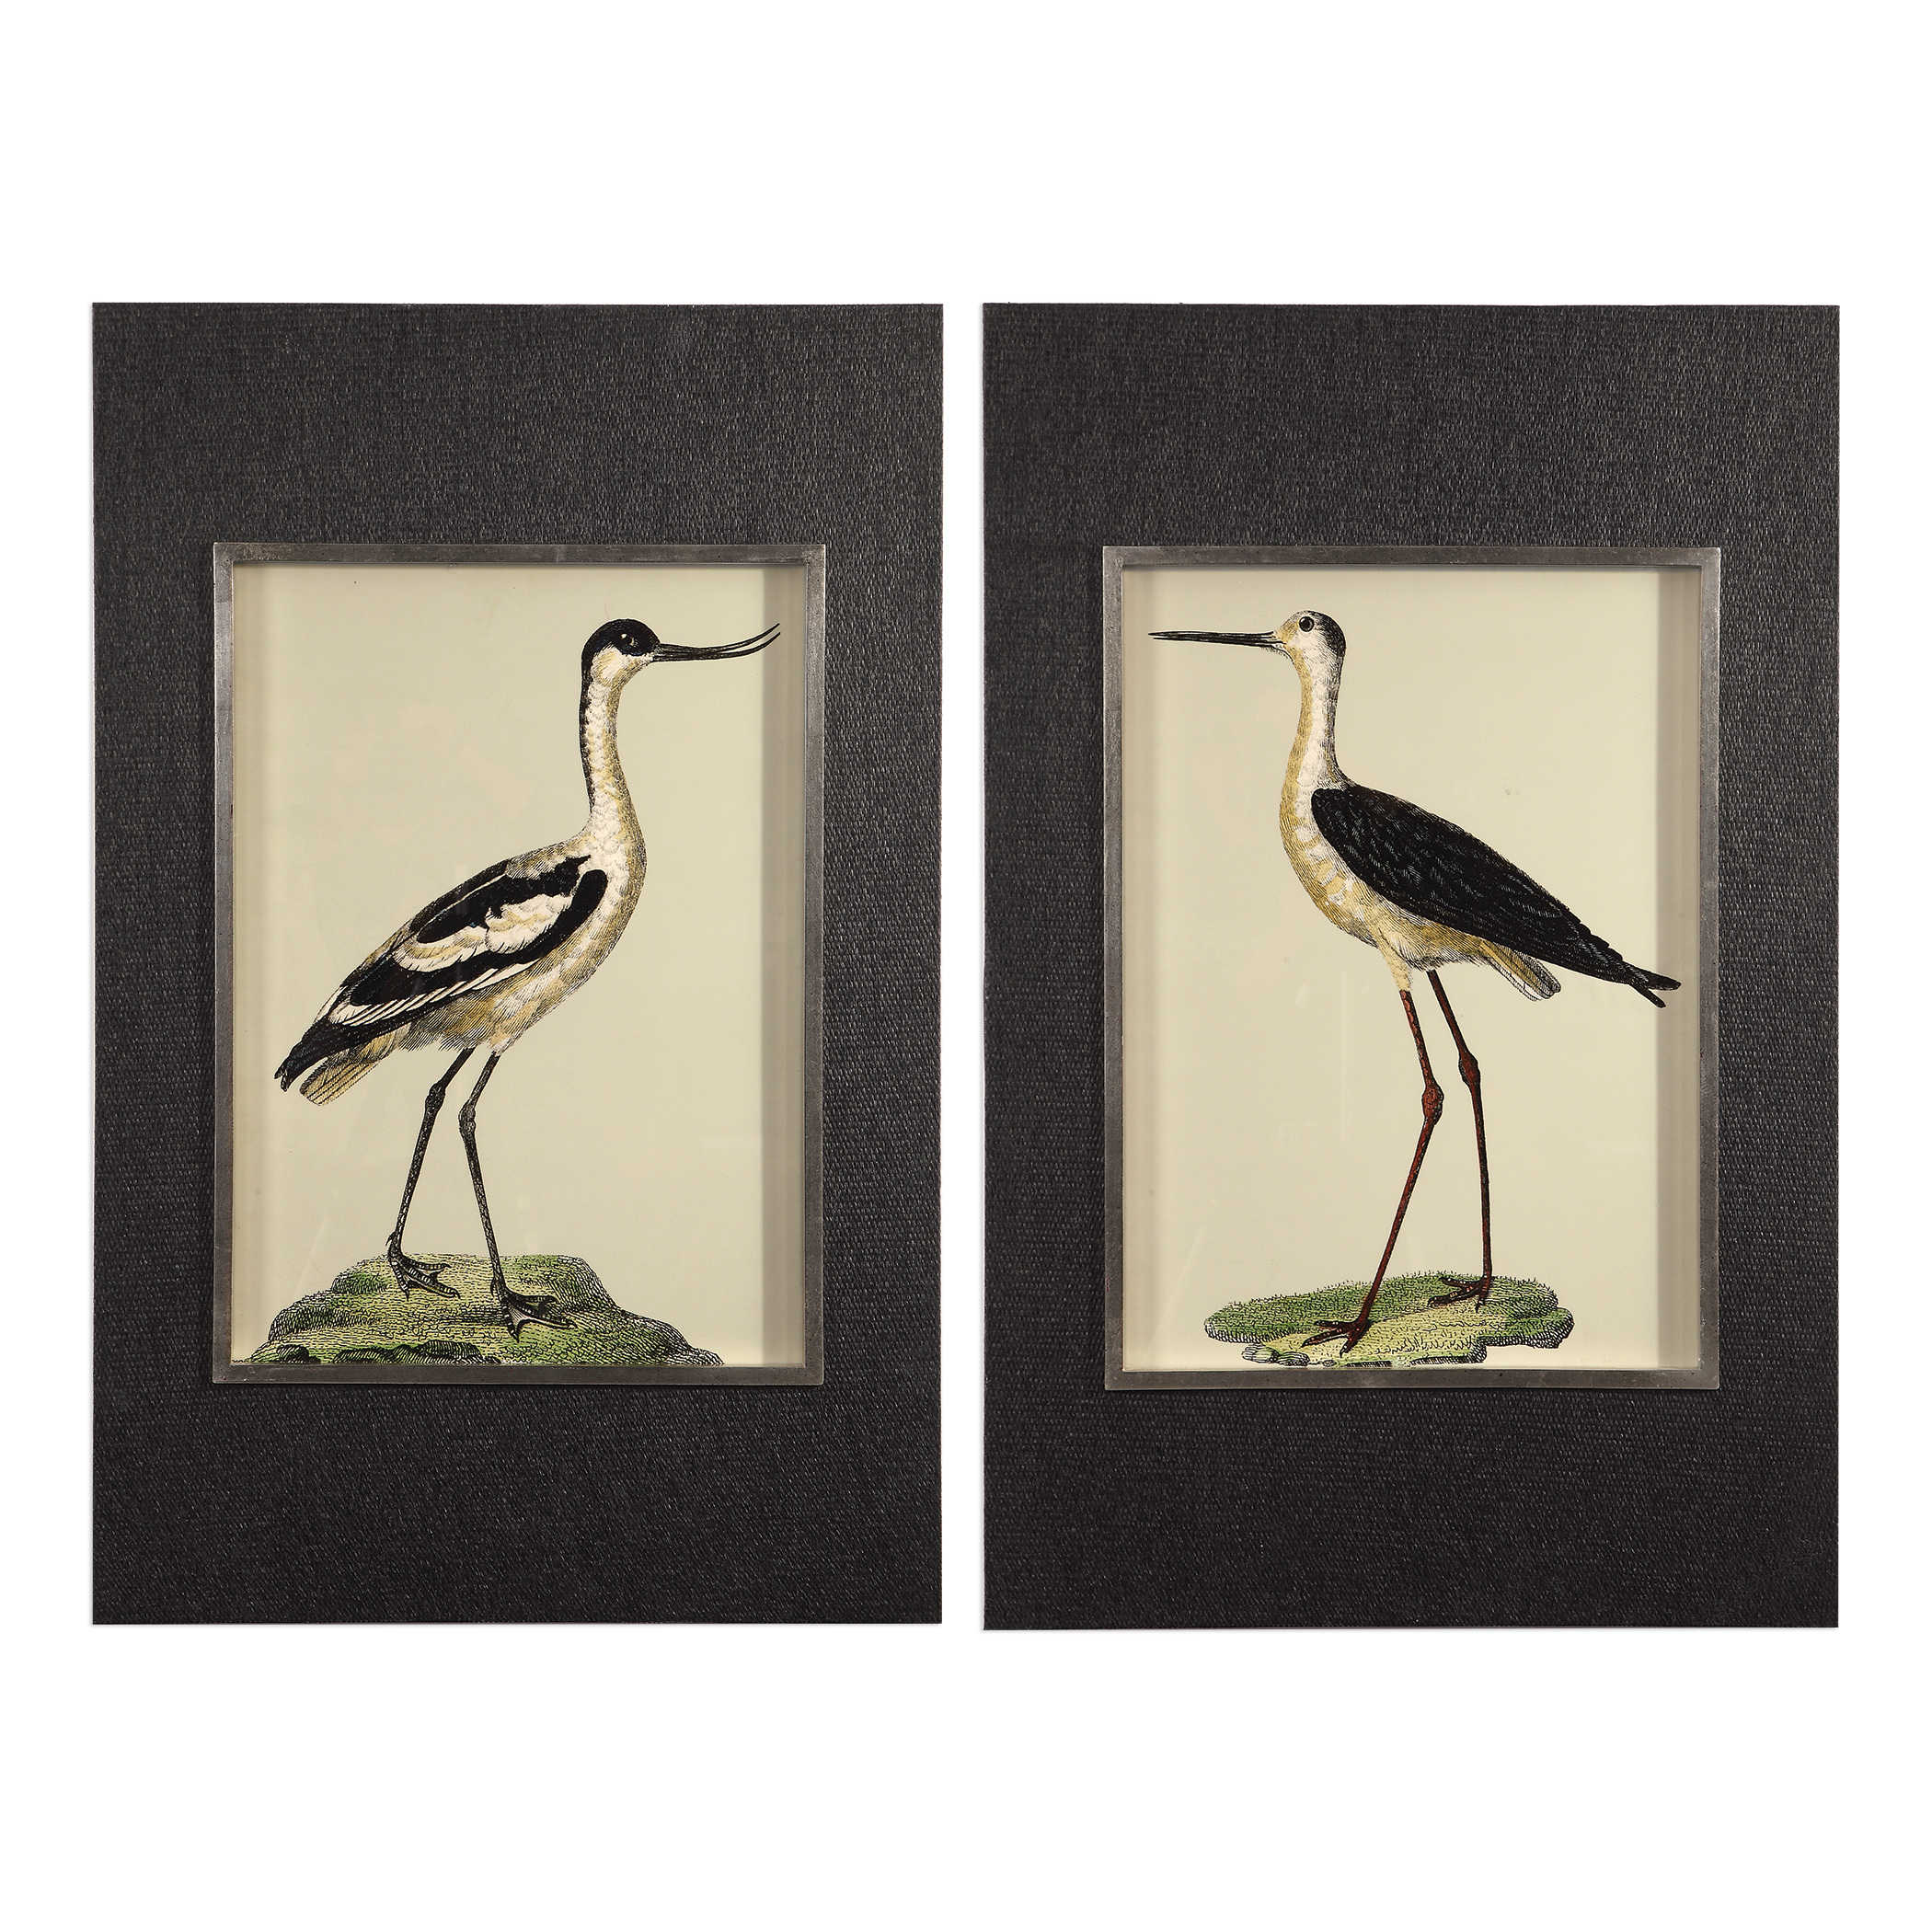 “Bird I and Bird II”-$345.00 ea